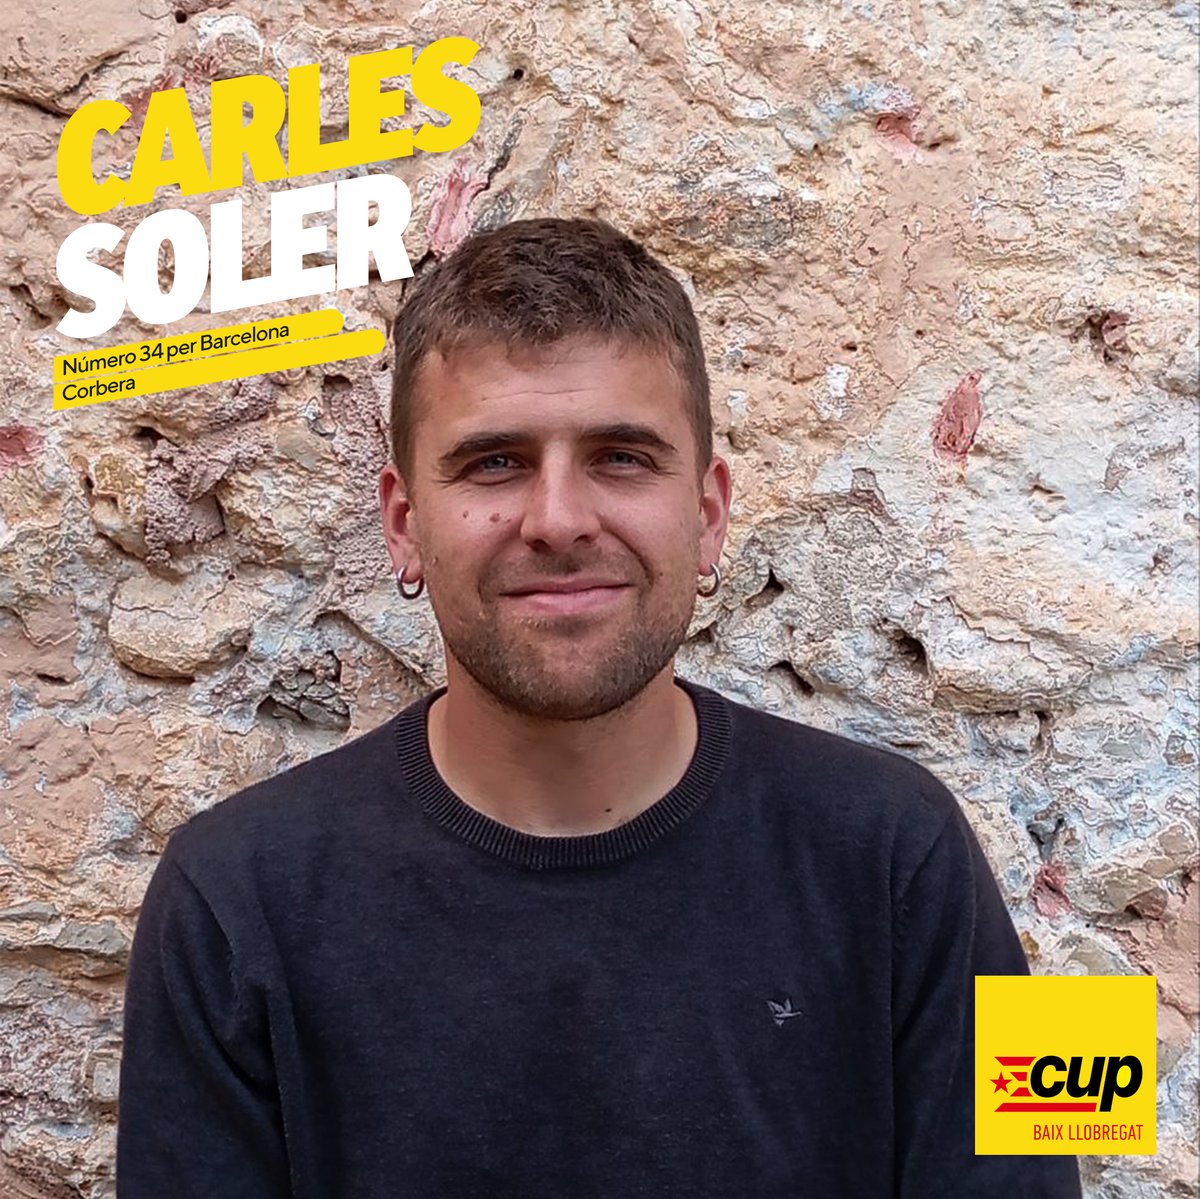 Número 3⃣4⃣ Carles Soler, Corbera

Nascut al barri barceloní del Poblenou, és professor de secundària. Des de ben jove a l'Assemblea de Joves del Poblenou i al teixit associatiu del barri

Fa tres anys que viu a Corbera, des d'on segueix treballant per construir la Unitat Popular